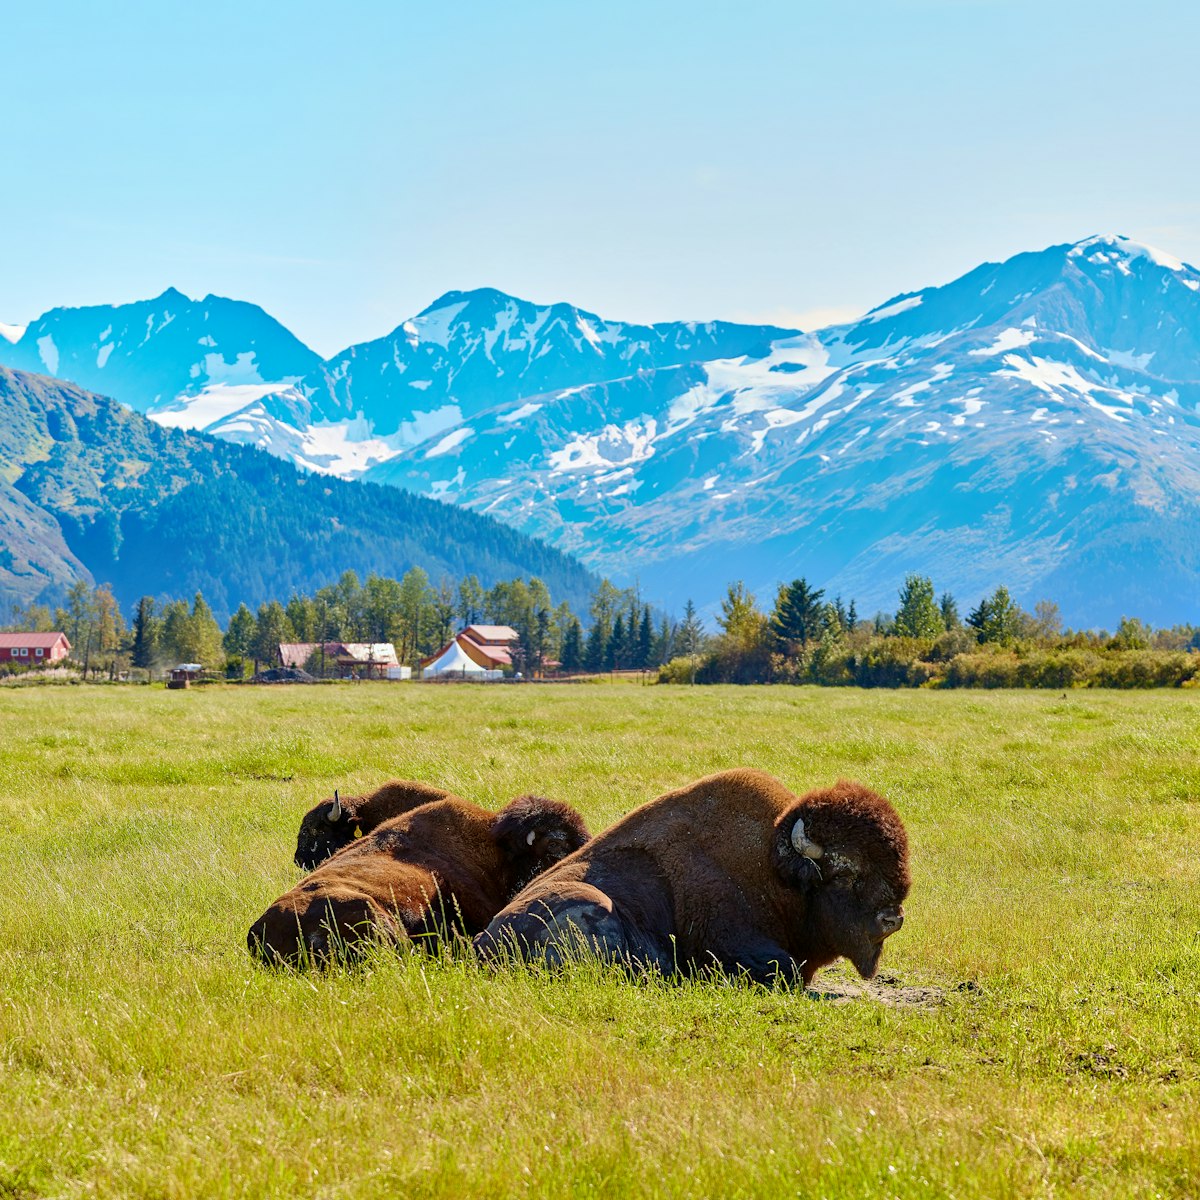 Bison at Alaska Wildlife Conservation Center.